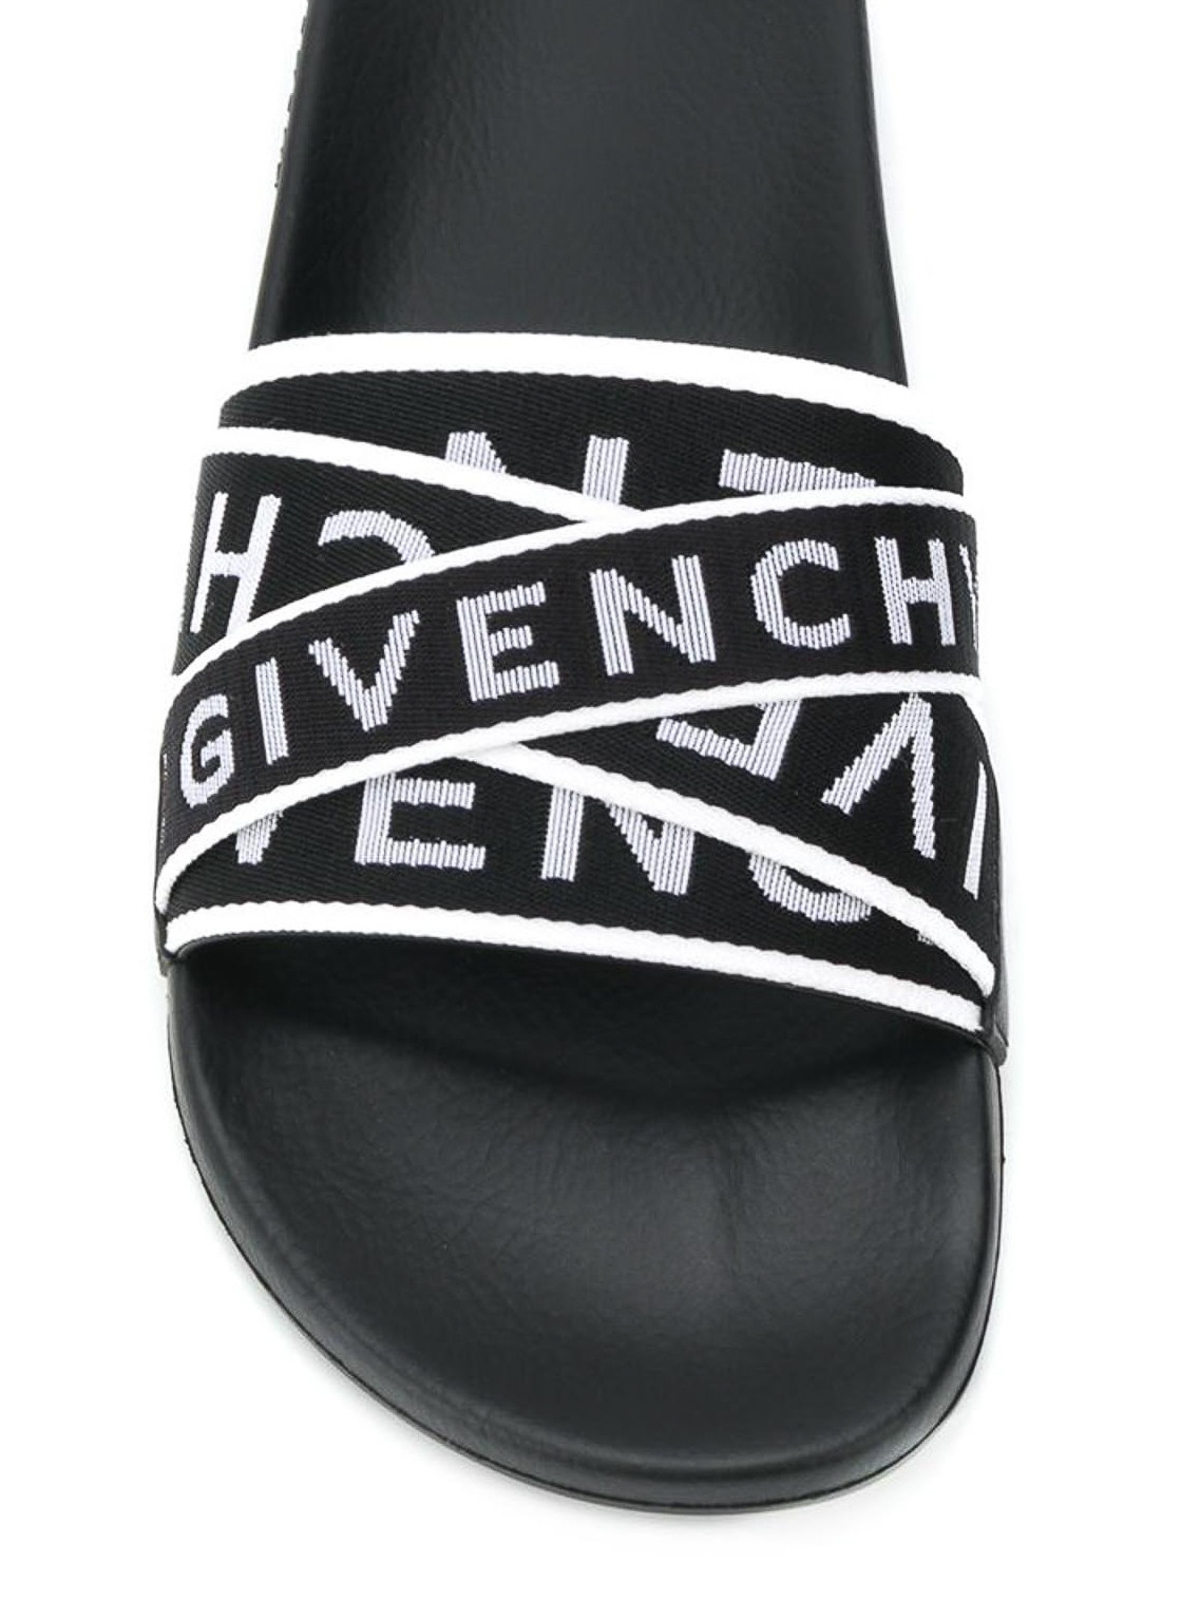 Sandalias Givenchy - Sandalias - Givenchy 4G - BH300DH0A5004 